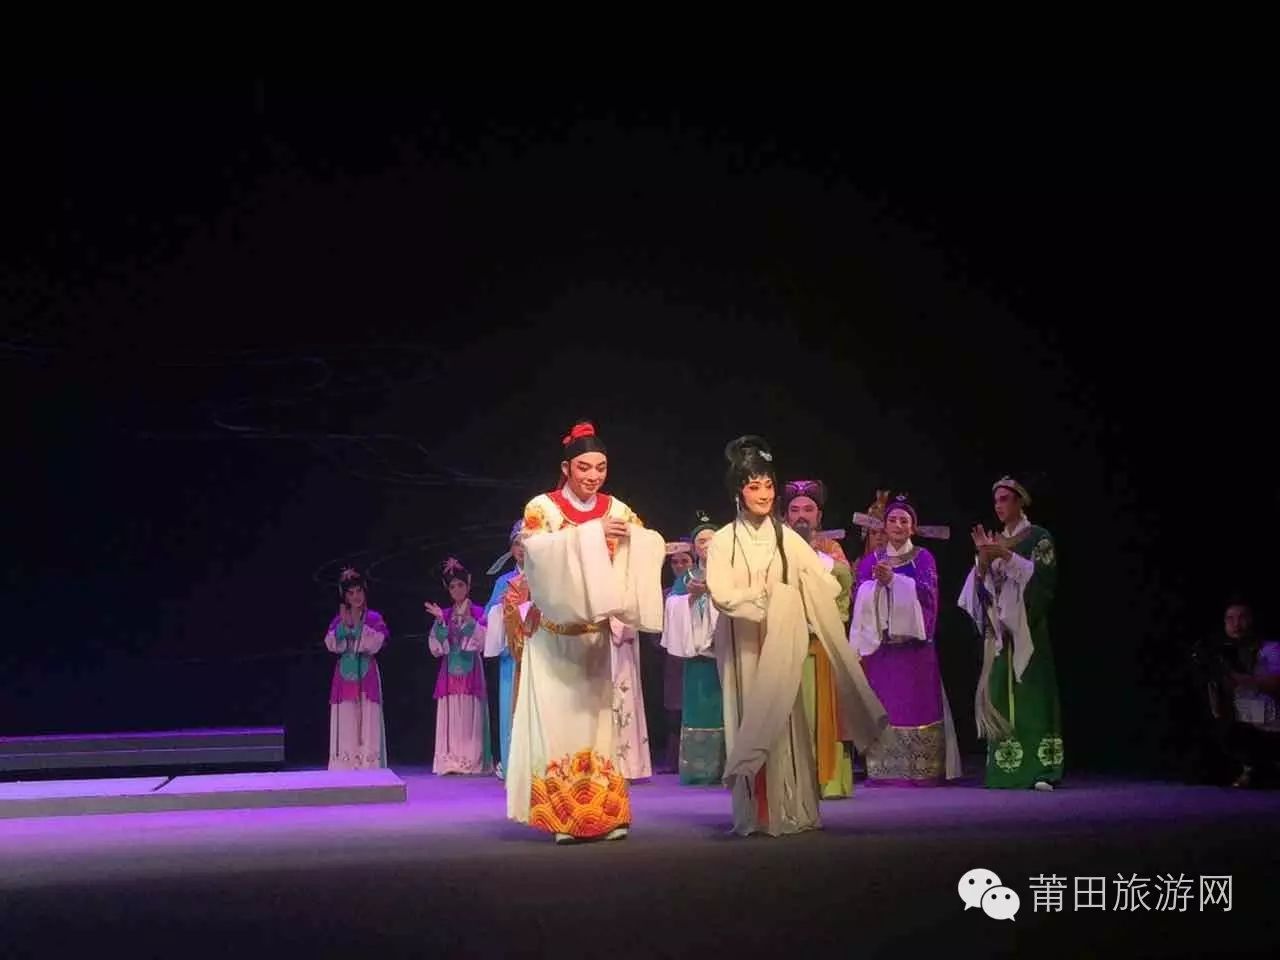 演出在北京长安大剧院里举行.莆仙戏特有的悠扬乐